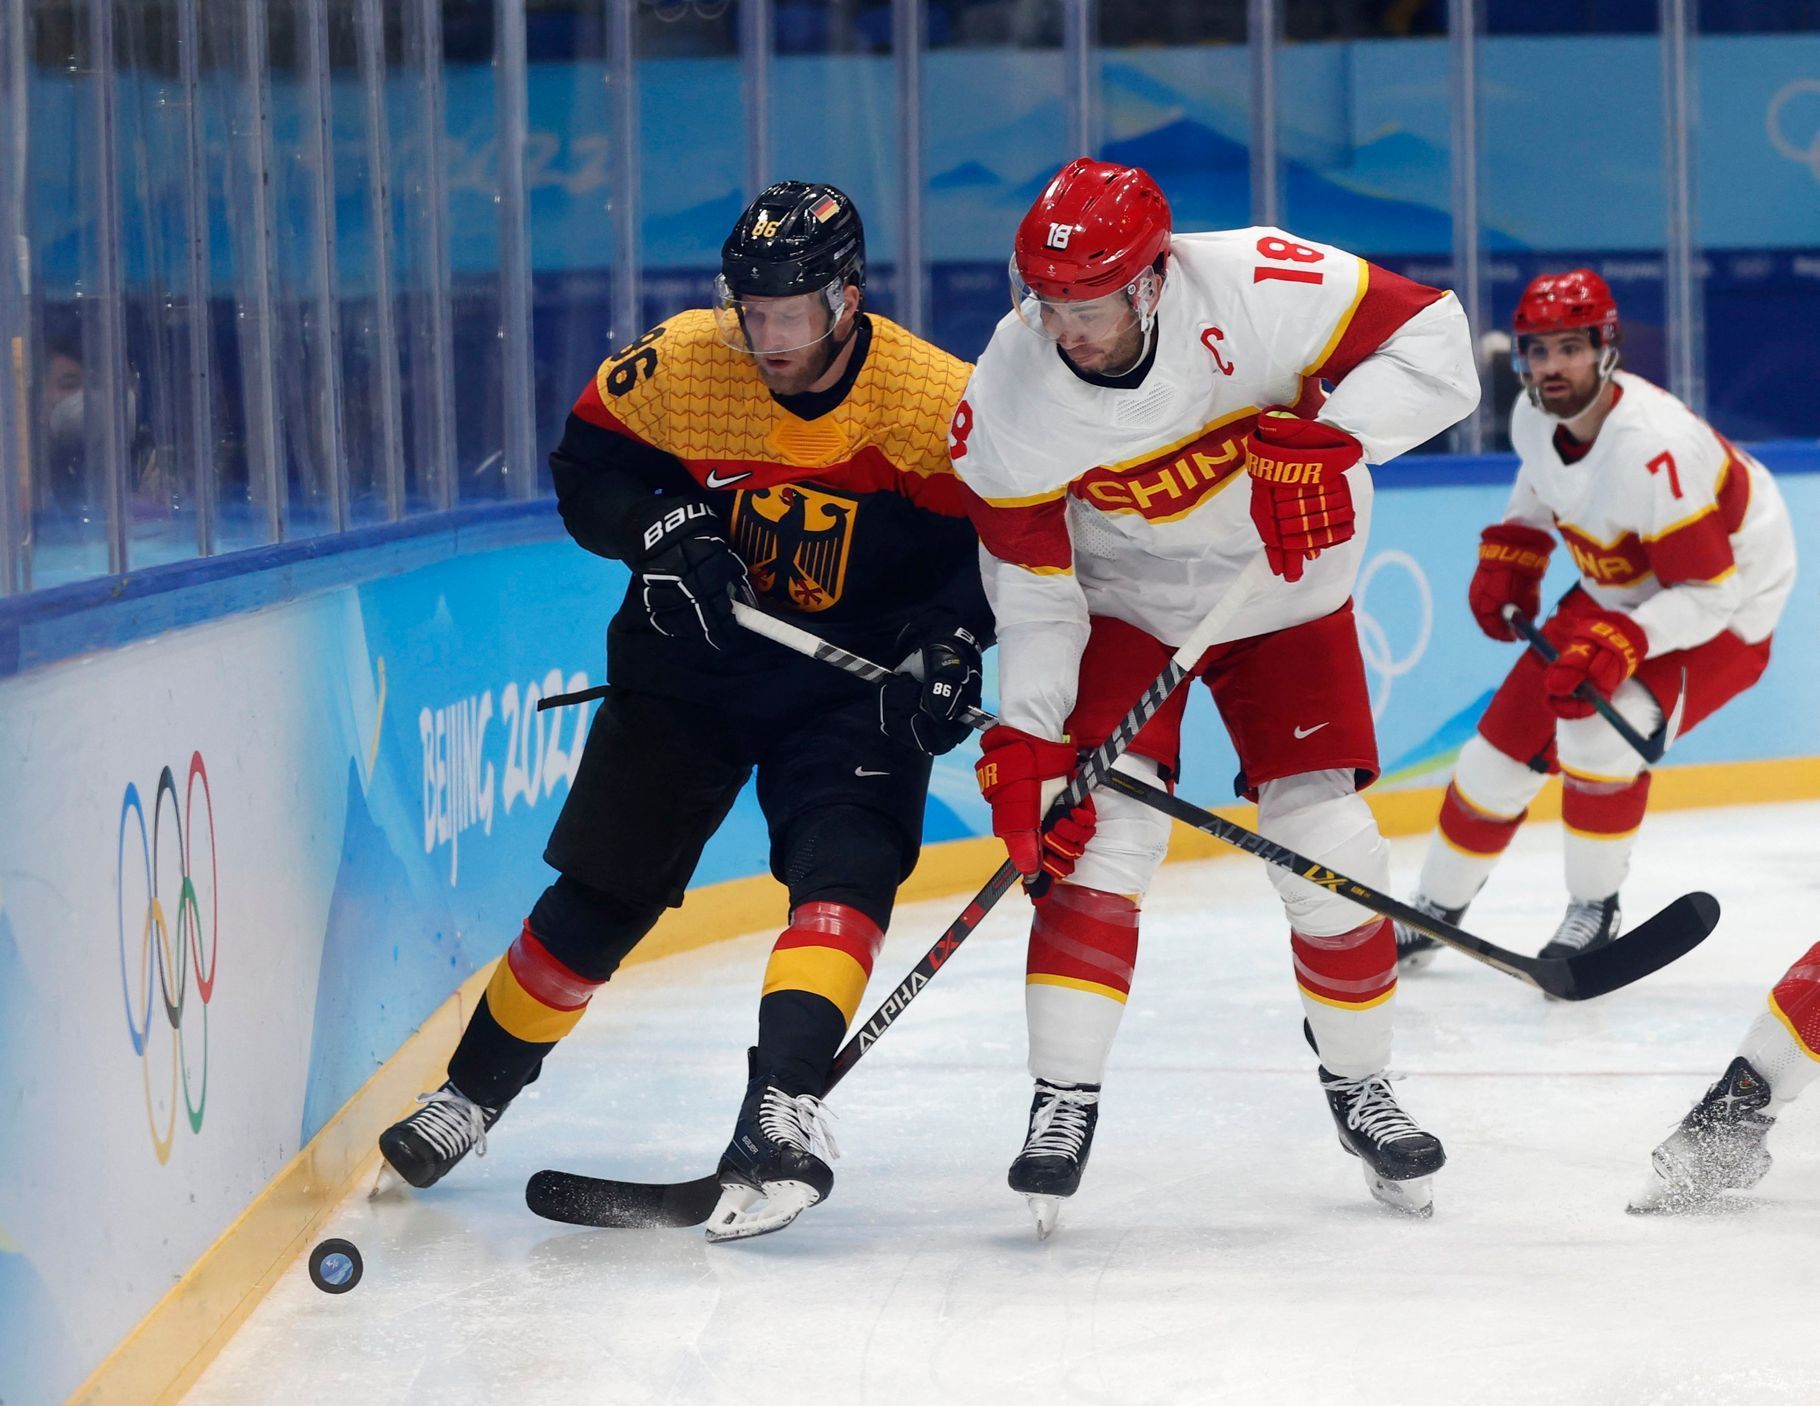 Daniel Pietta z Německa v souboji během utkání s Čínou na ZOH 2022.